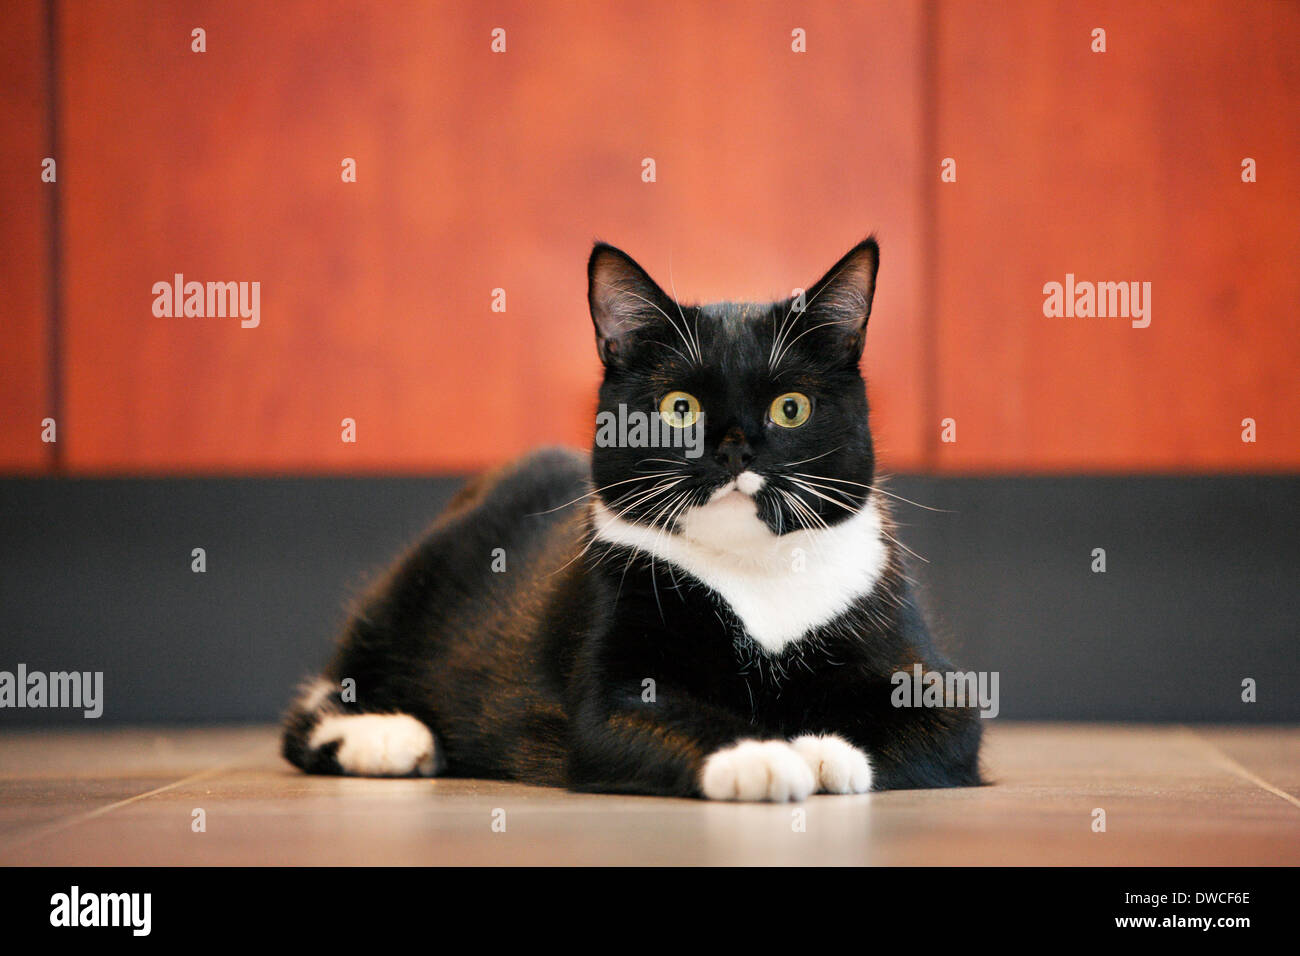 Cerca de tuxedo cat, bicolor gato doméstico con un blanco y negro abrigo descansando en el piso en casa Foto de stock